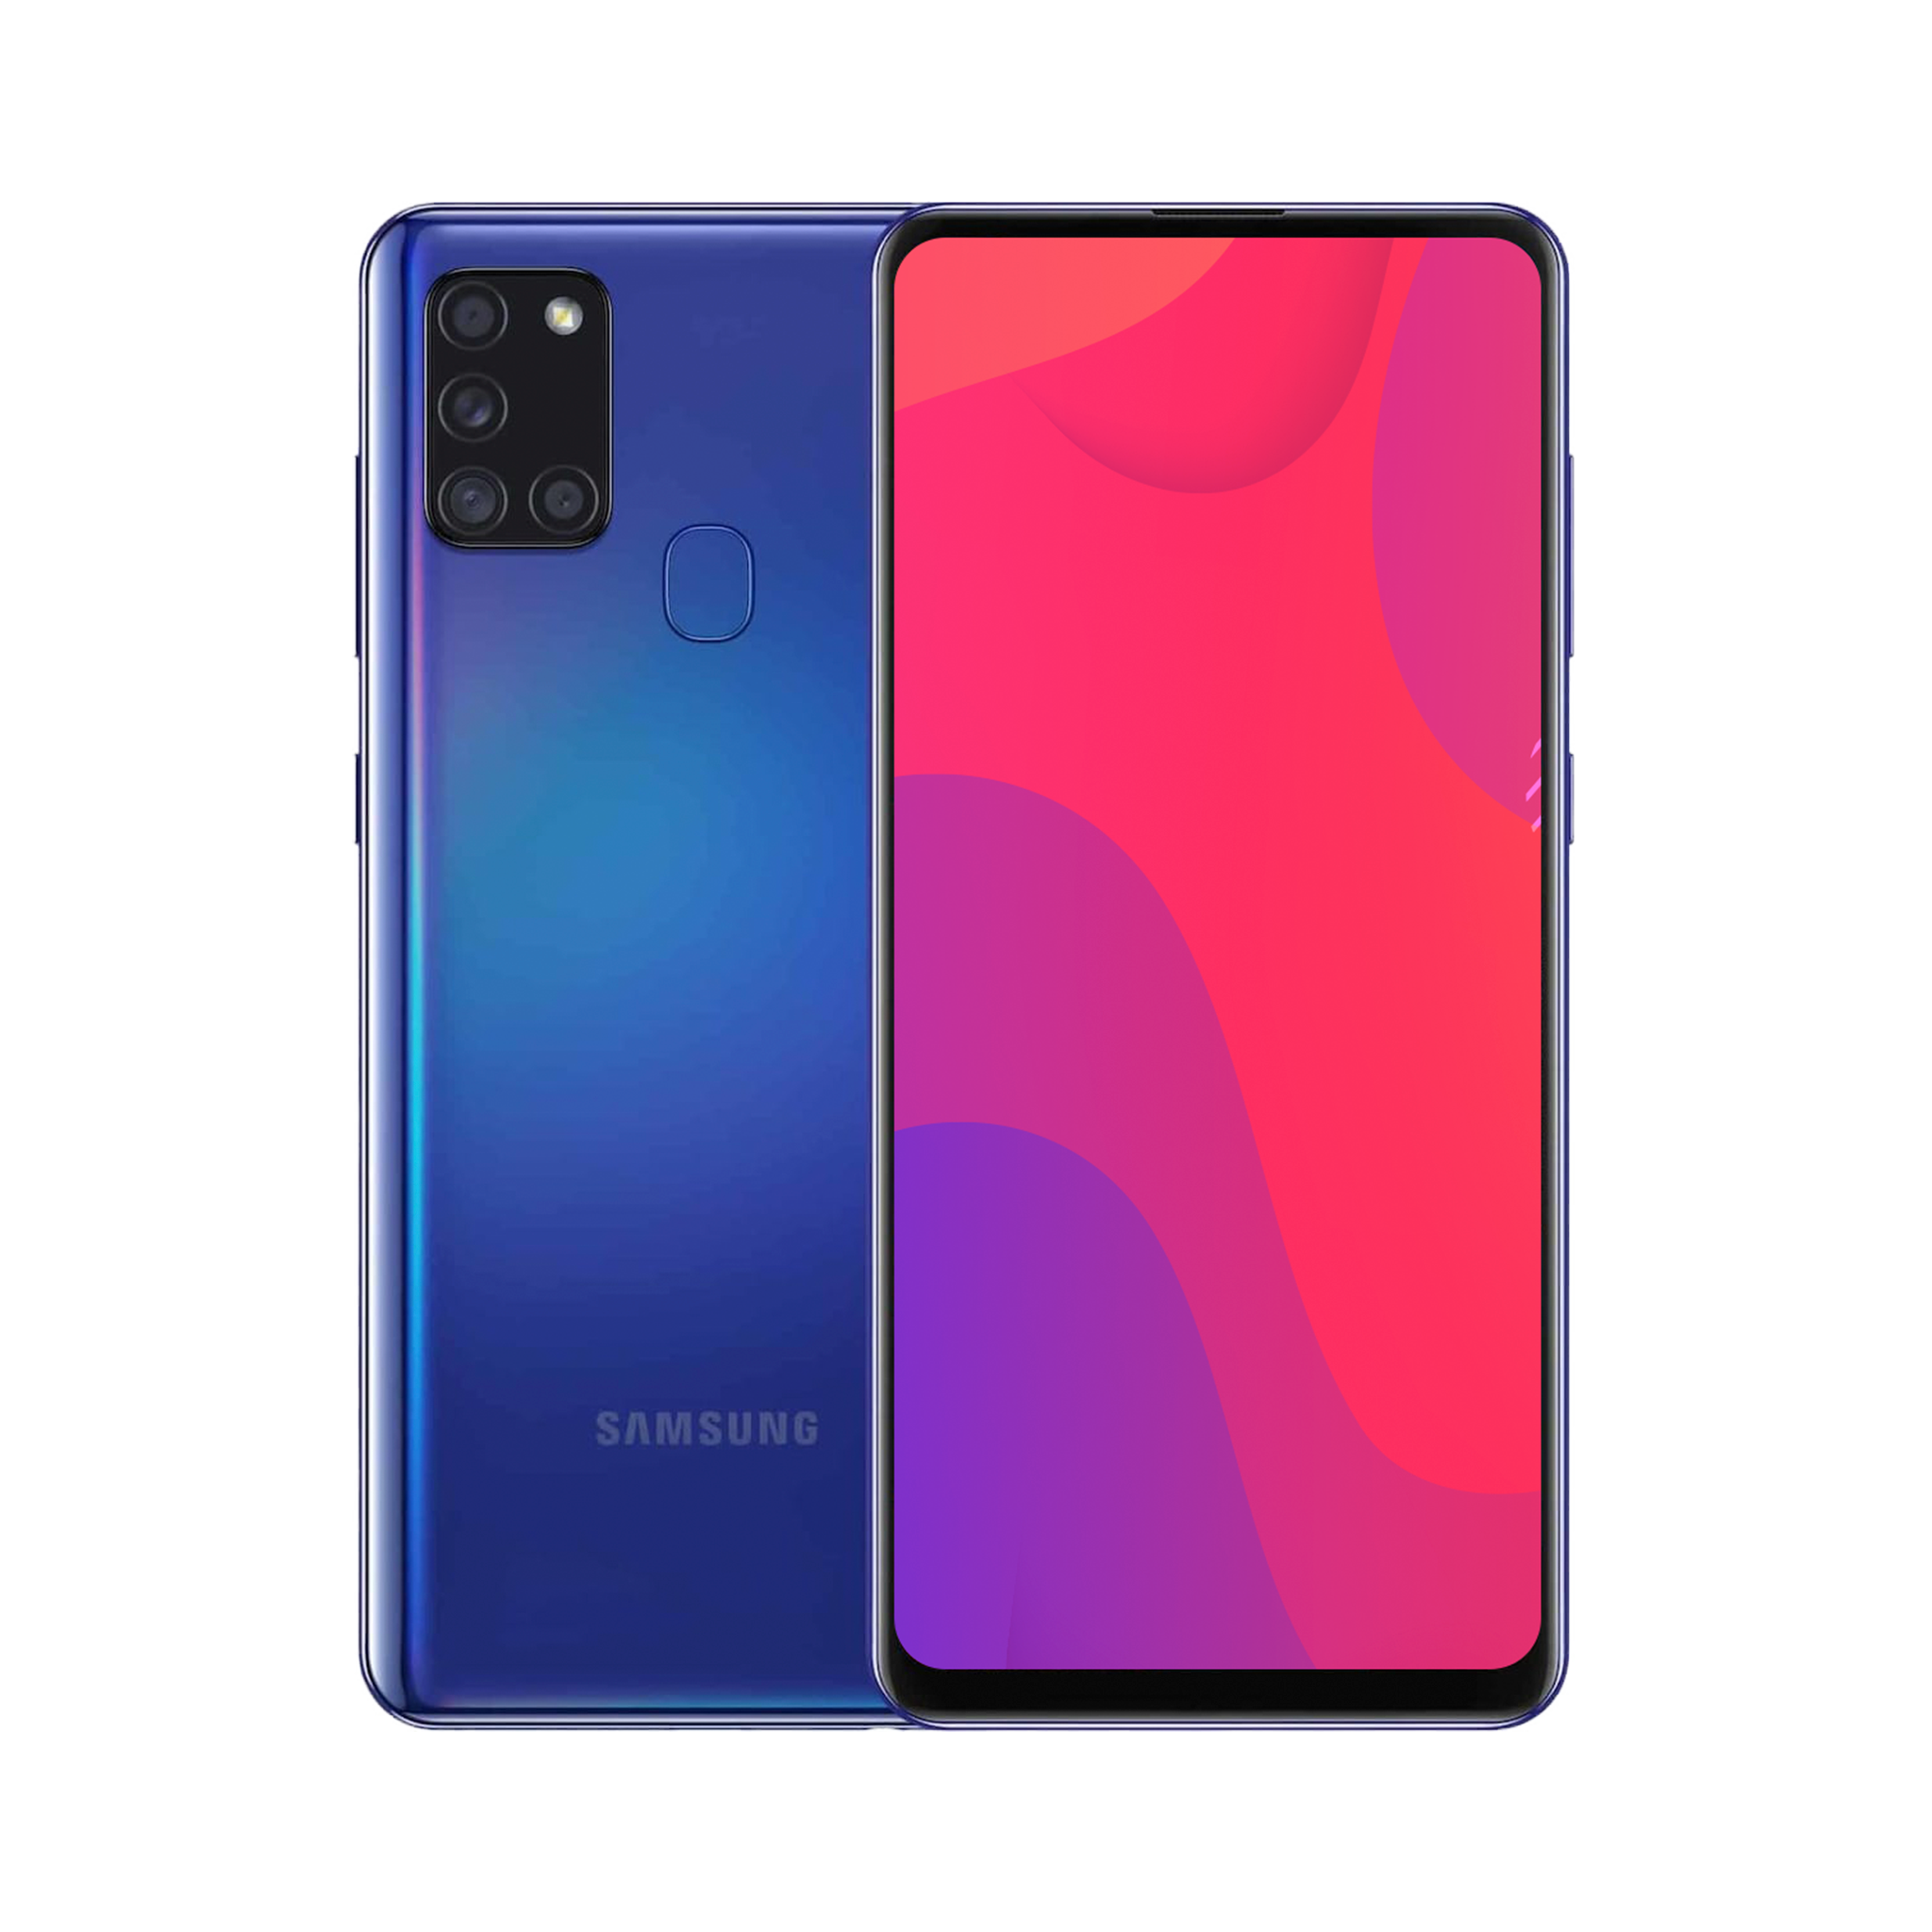 Samsung Galaxy A21s 32GB Blue